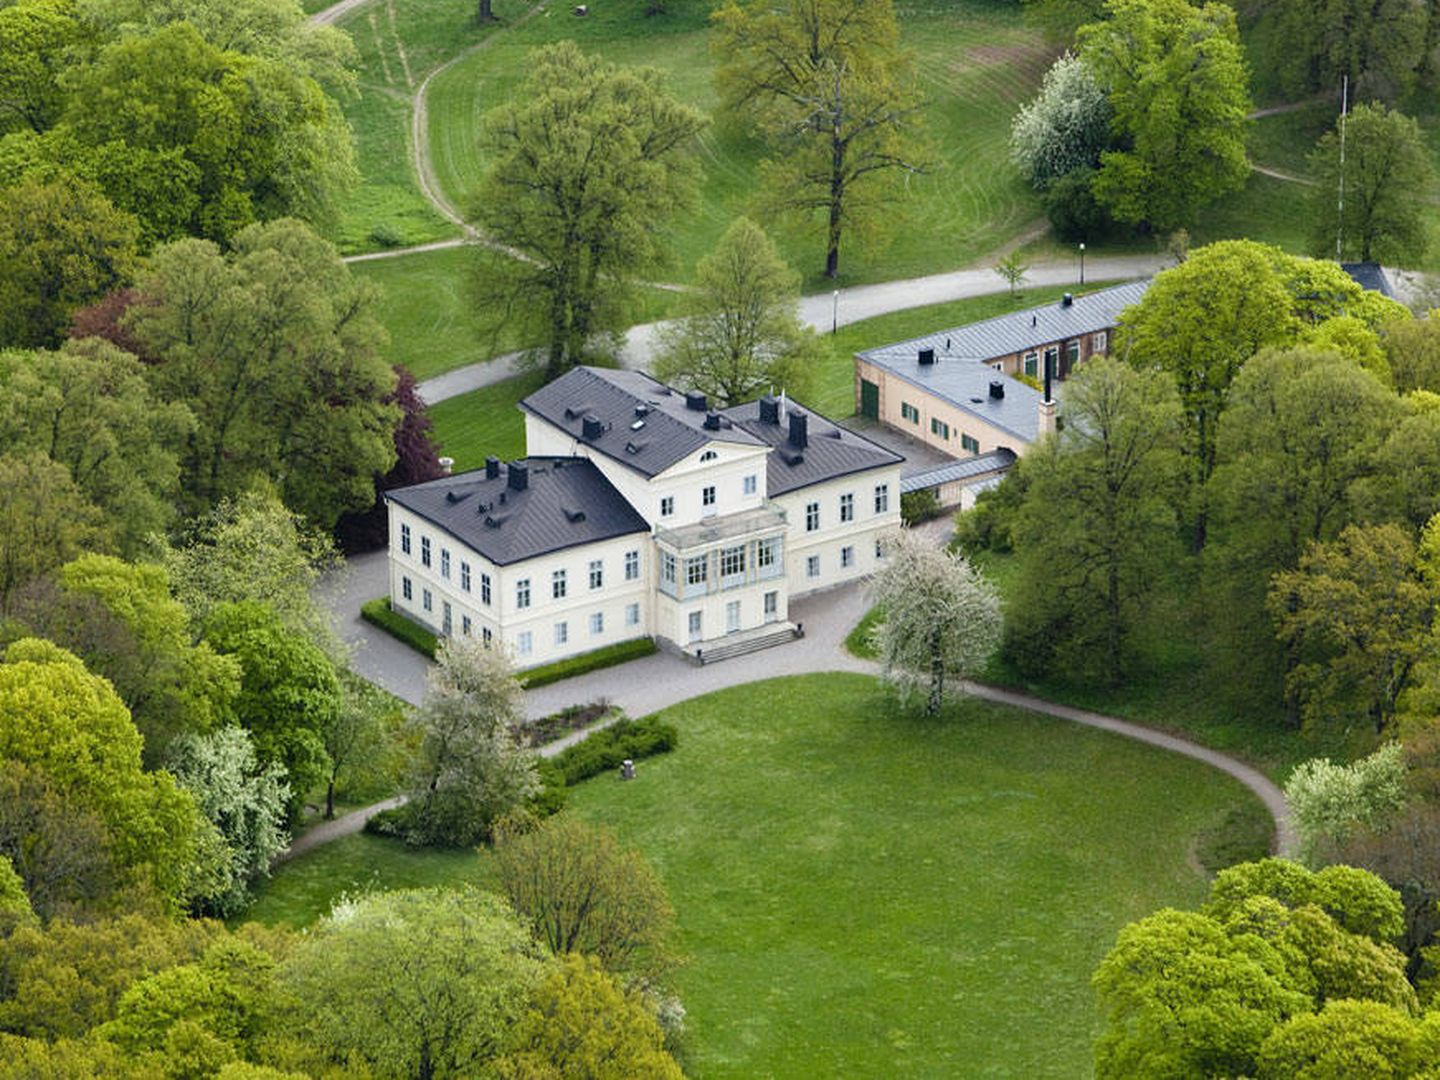 Vista general del castillo de Haga. (Klas Sjöberg / Casa Real de Suecia)